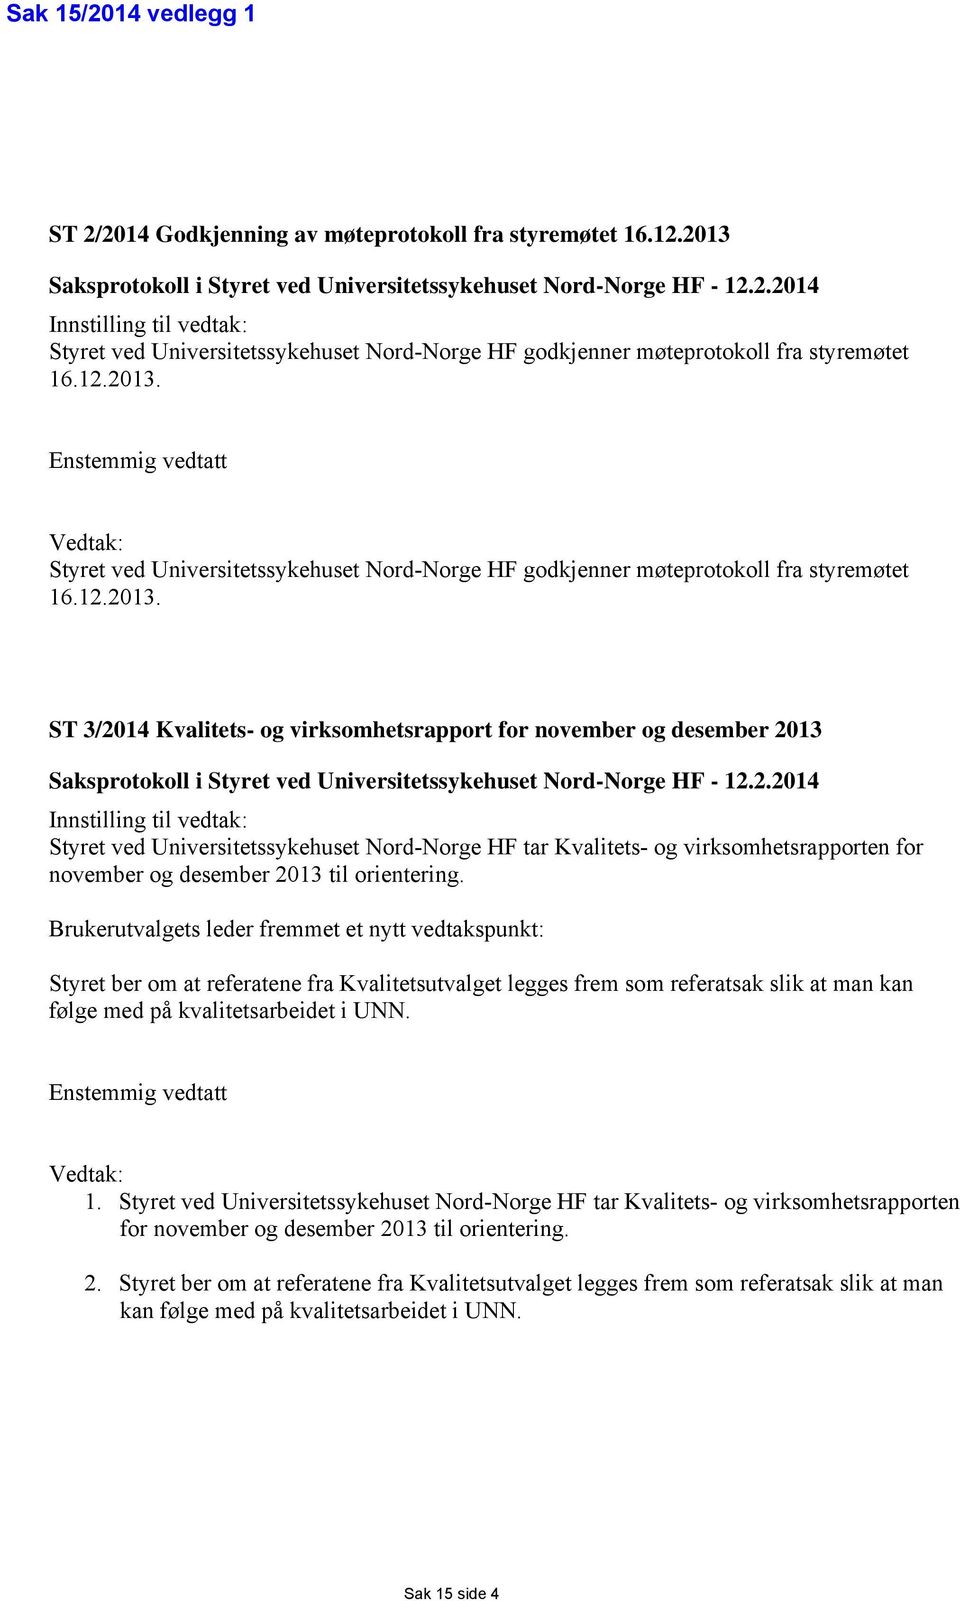 2.2014 Innstilling til vedtak: Styret ved Universitetssykehuset Nord-Norge HF tar Kvalitets- og virksomhetsrapporten for november og desember 2013 til orientering.